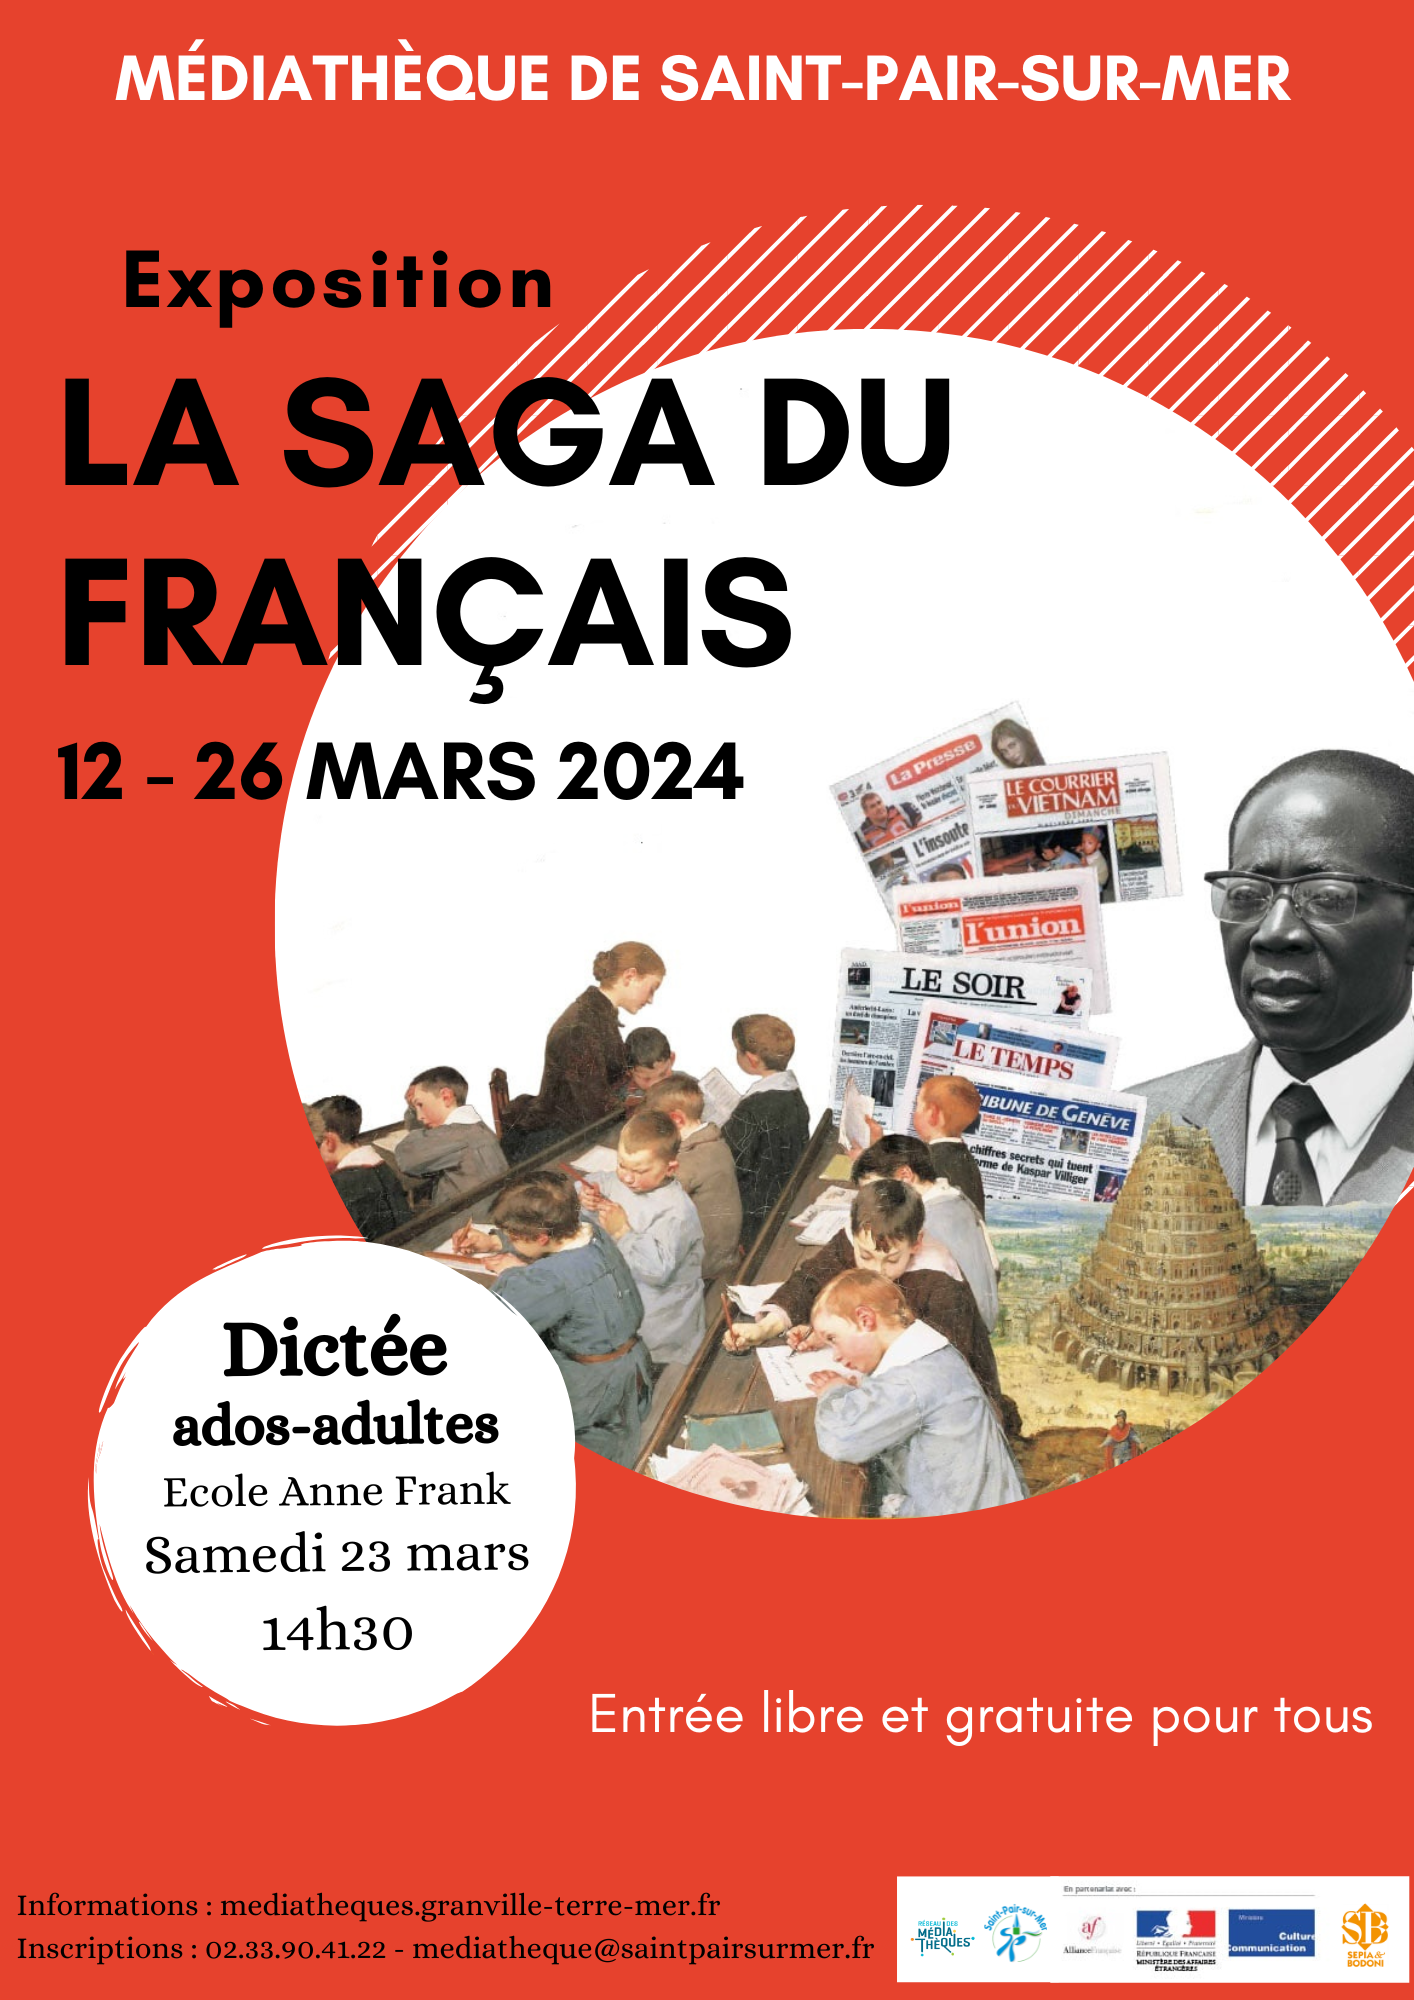 saint-pair-sur-mer médiathèque événements dictée français exposition